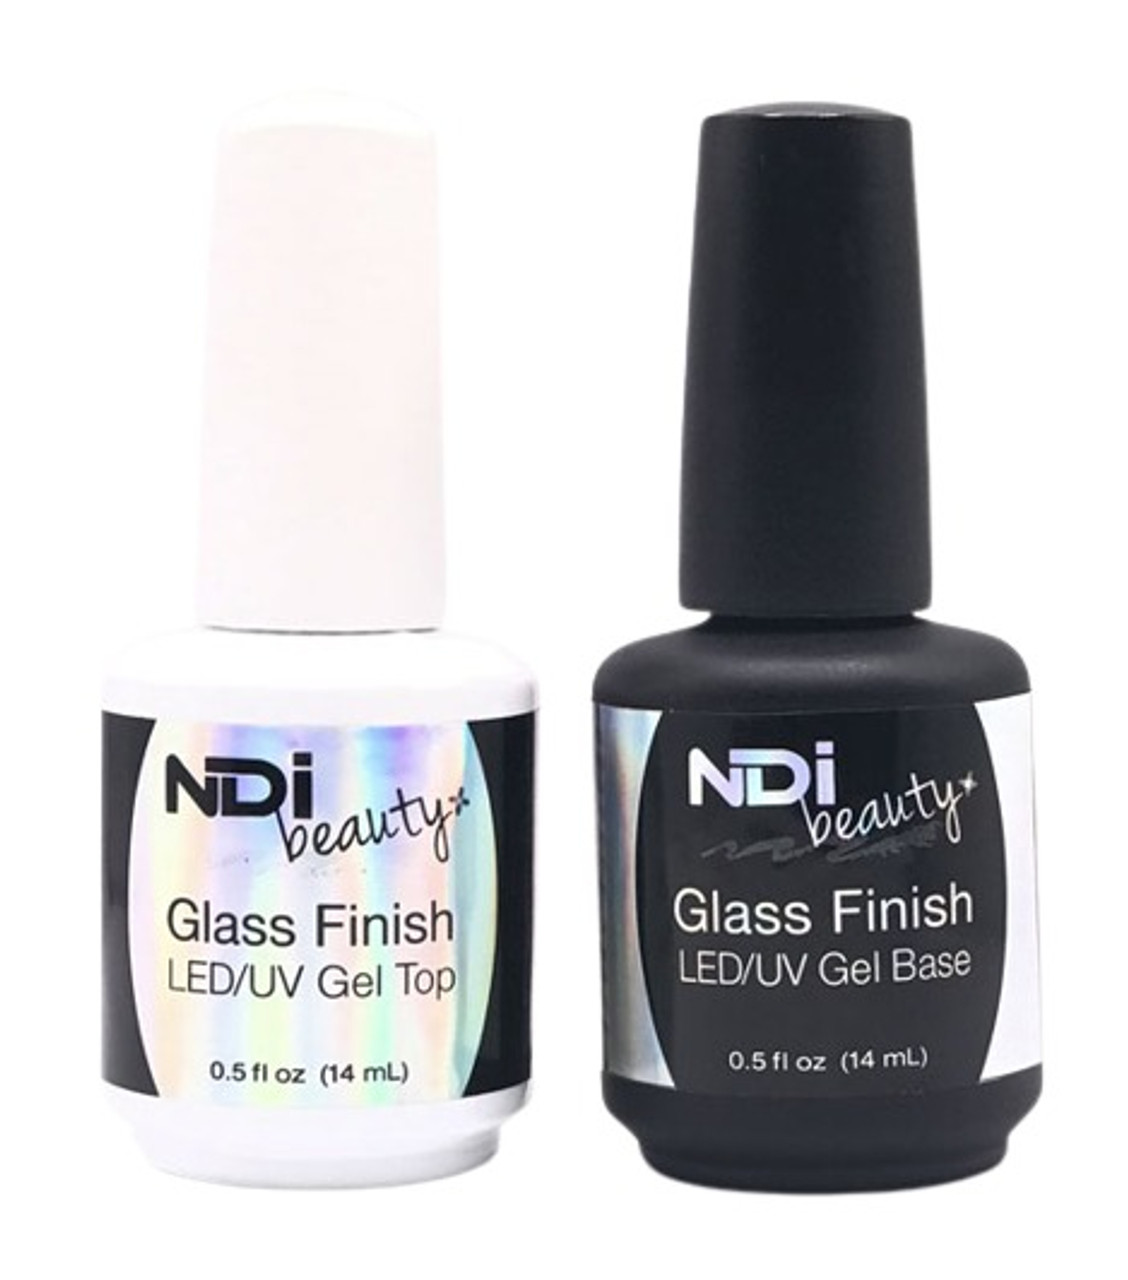 NDi beauty Glass Finish LED/UV DUO Gel Top & Base - .5 oz